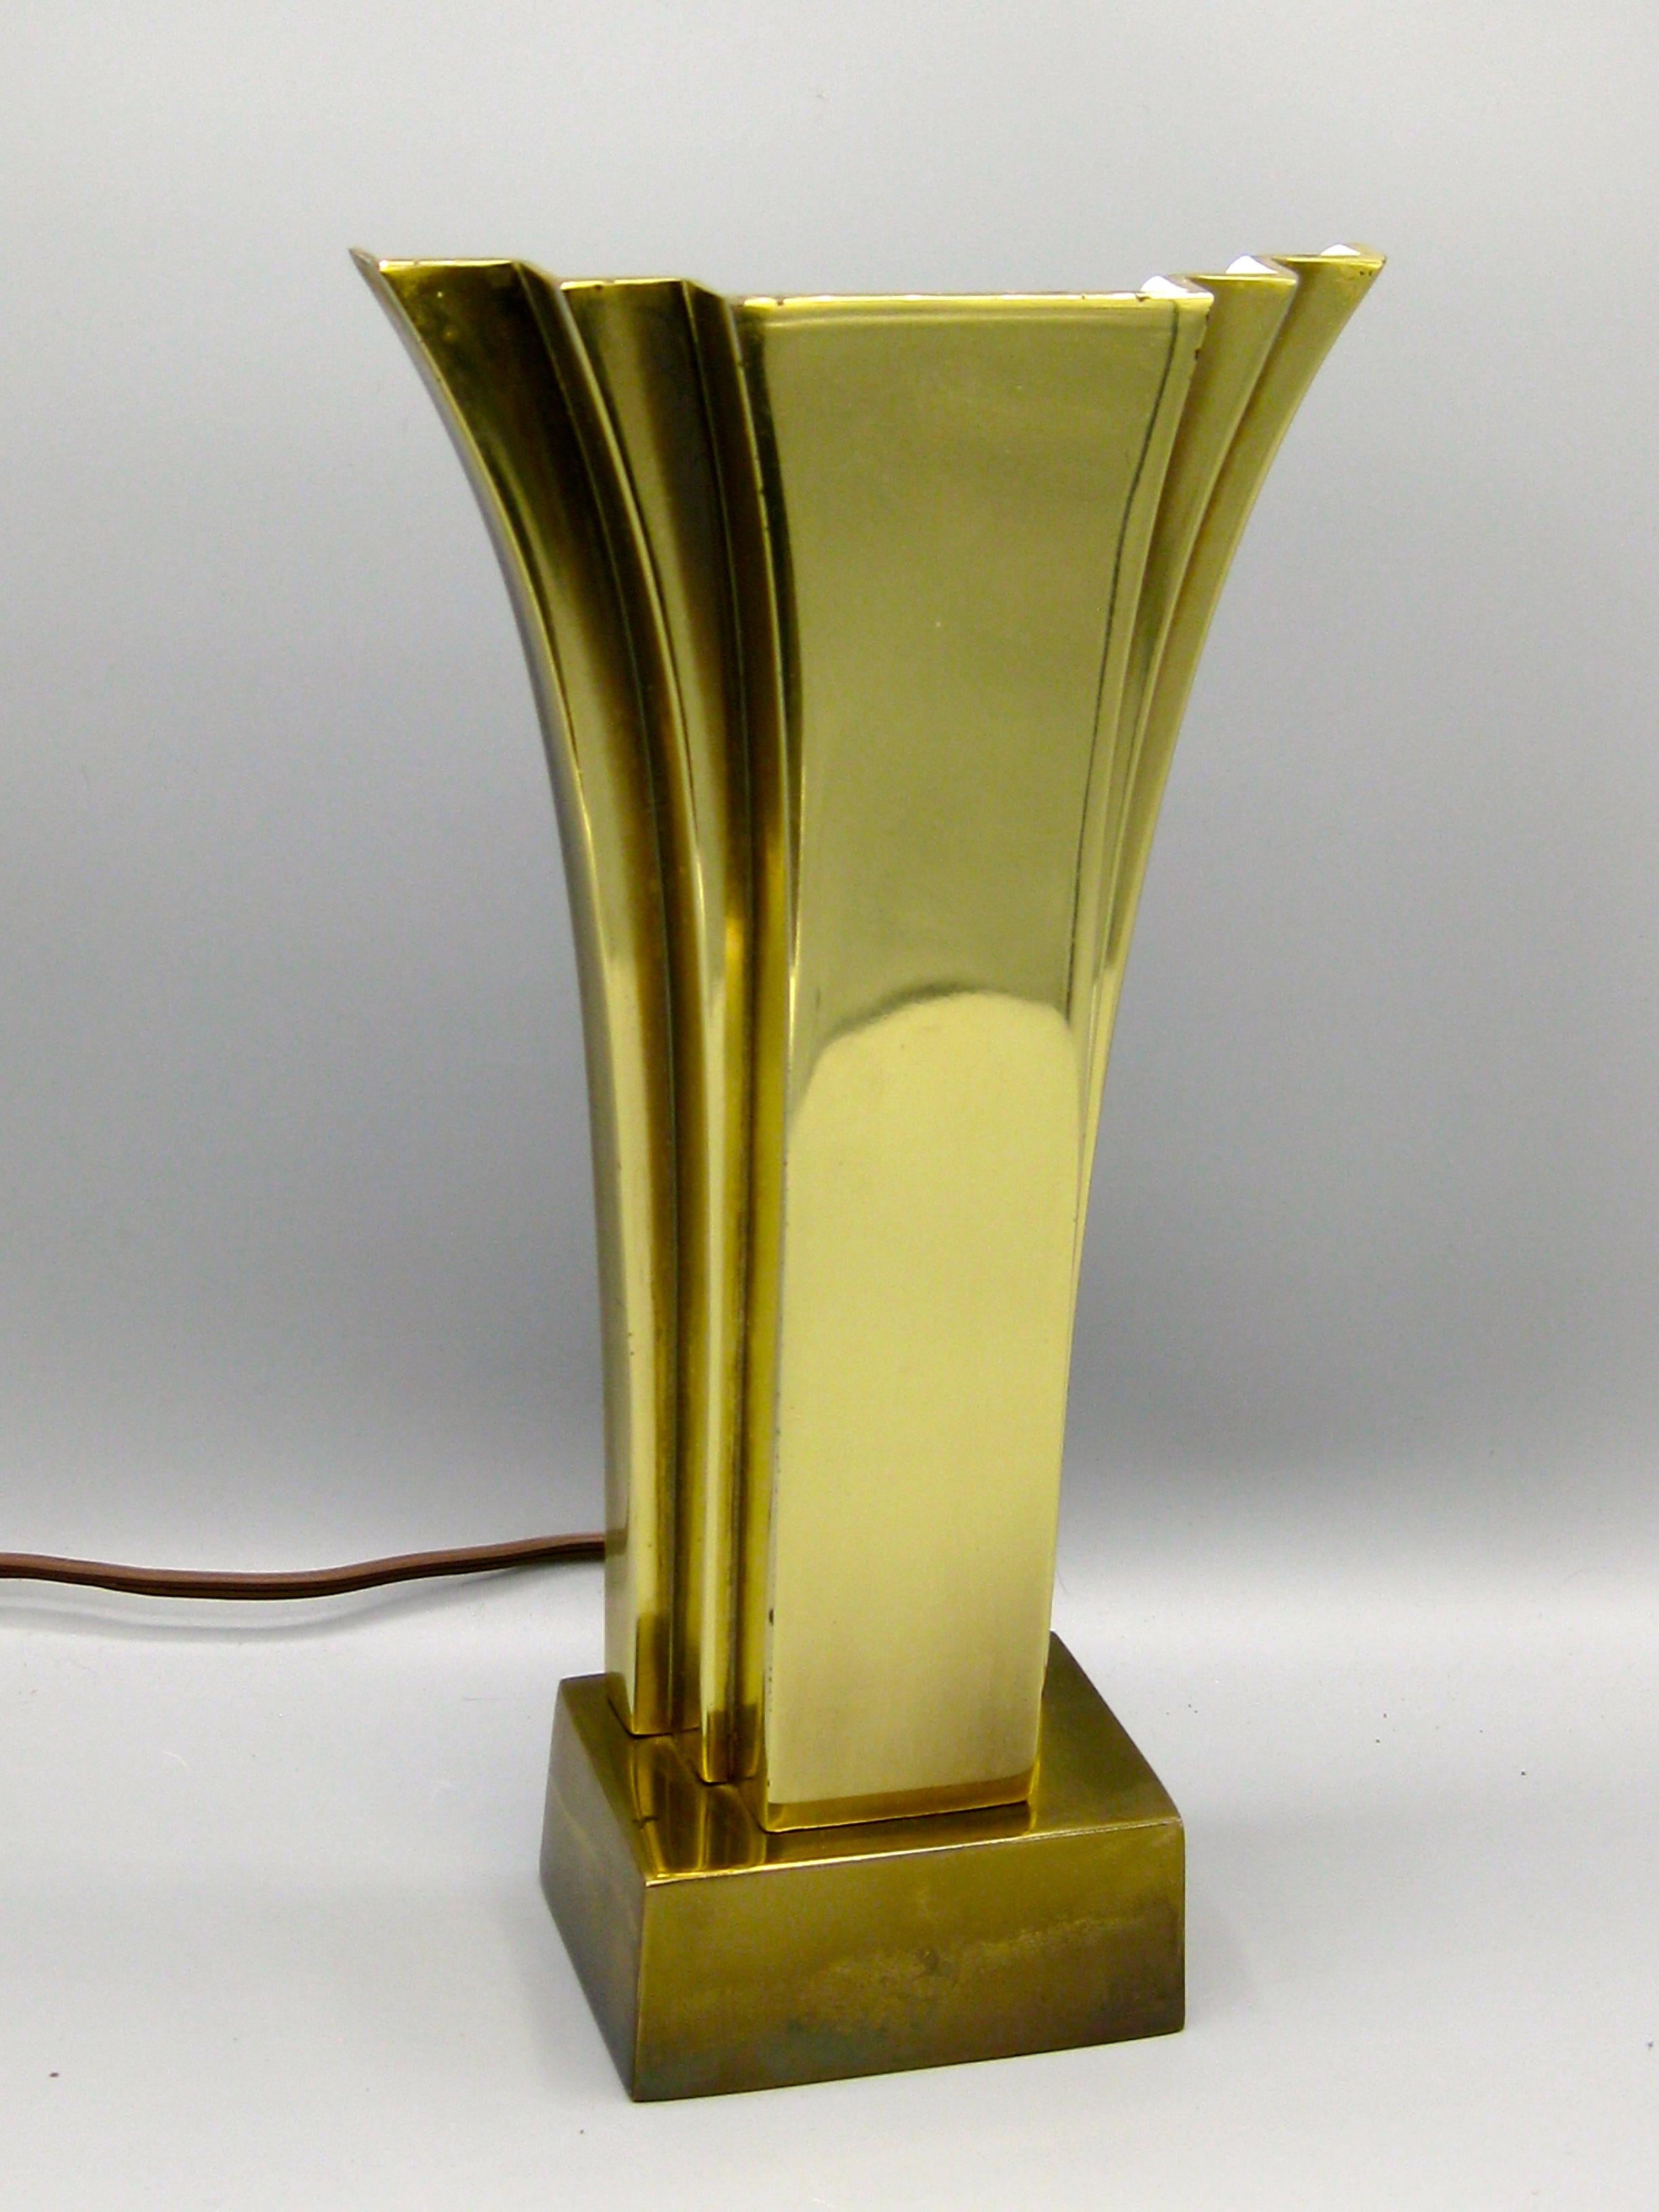 Wunderschöne Stiffel Art Deco Revival Tisch- oder Schreibtischlampe aus Messing, ca. 1970er Jahre. Die Lampe hat die Form eines Fächers und erzeugt ein wunderbares Uplight. Funktioniert, wie es sollte. In sehr gutem Zustand. Keine Risse, keine